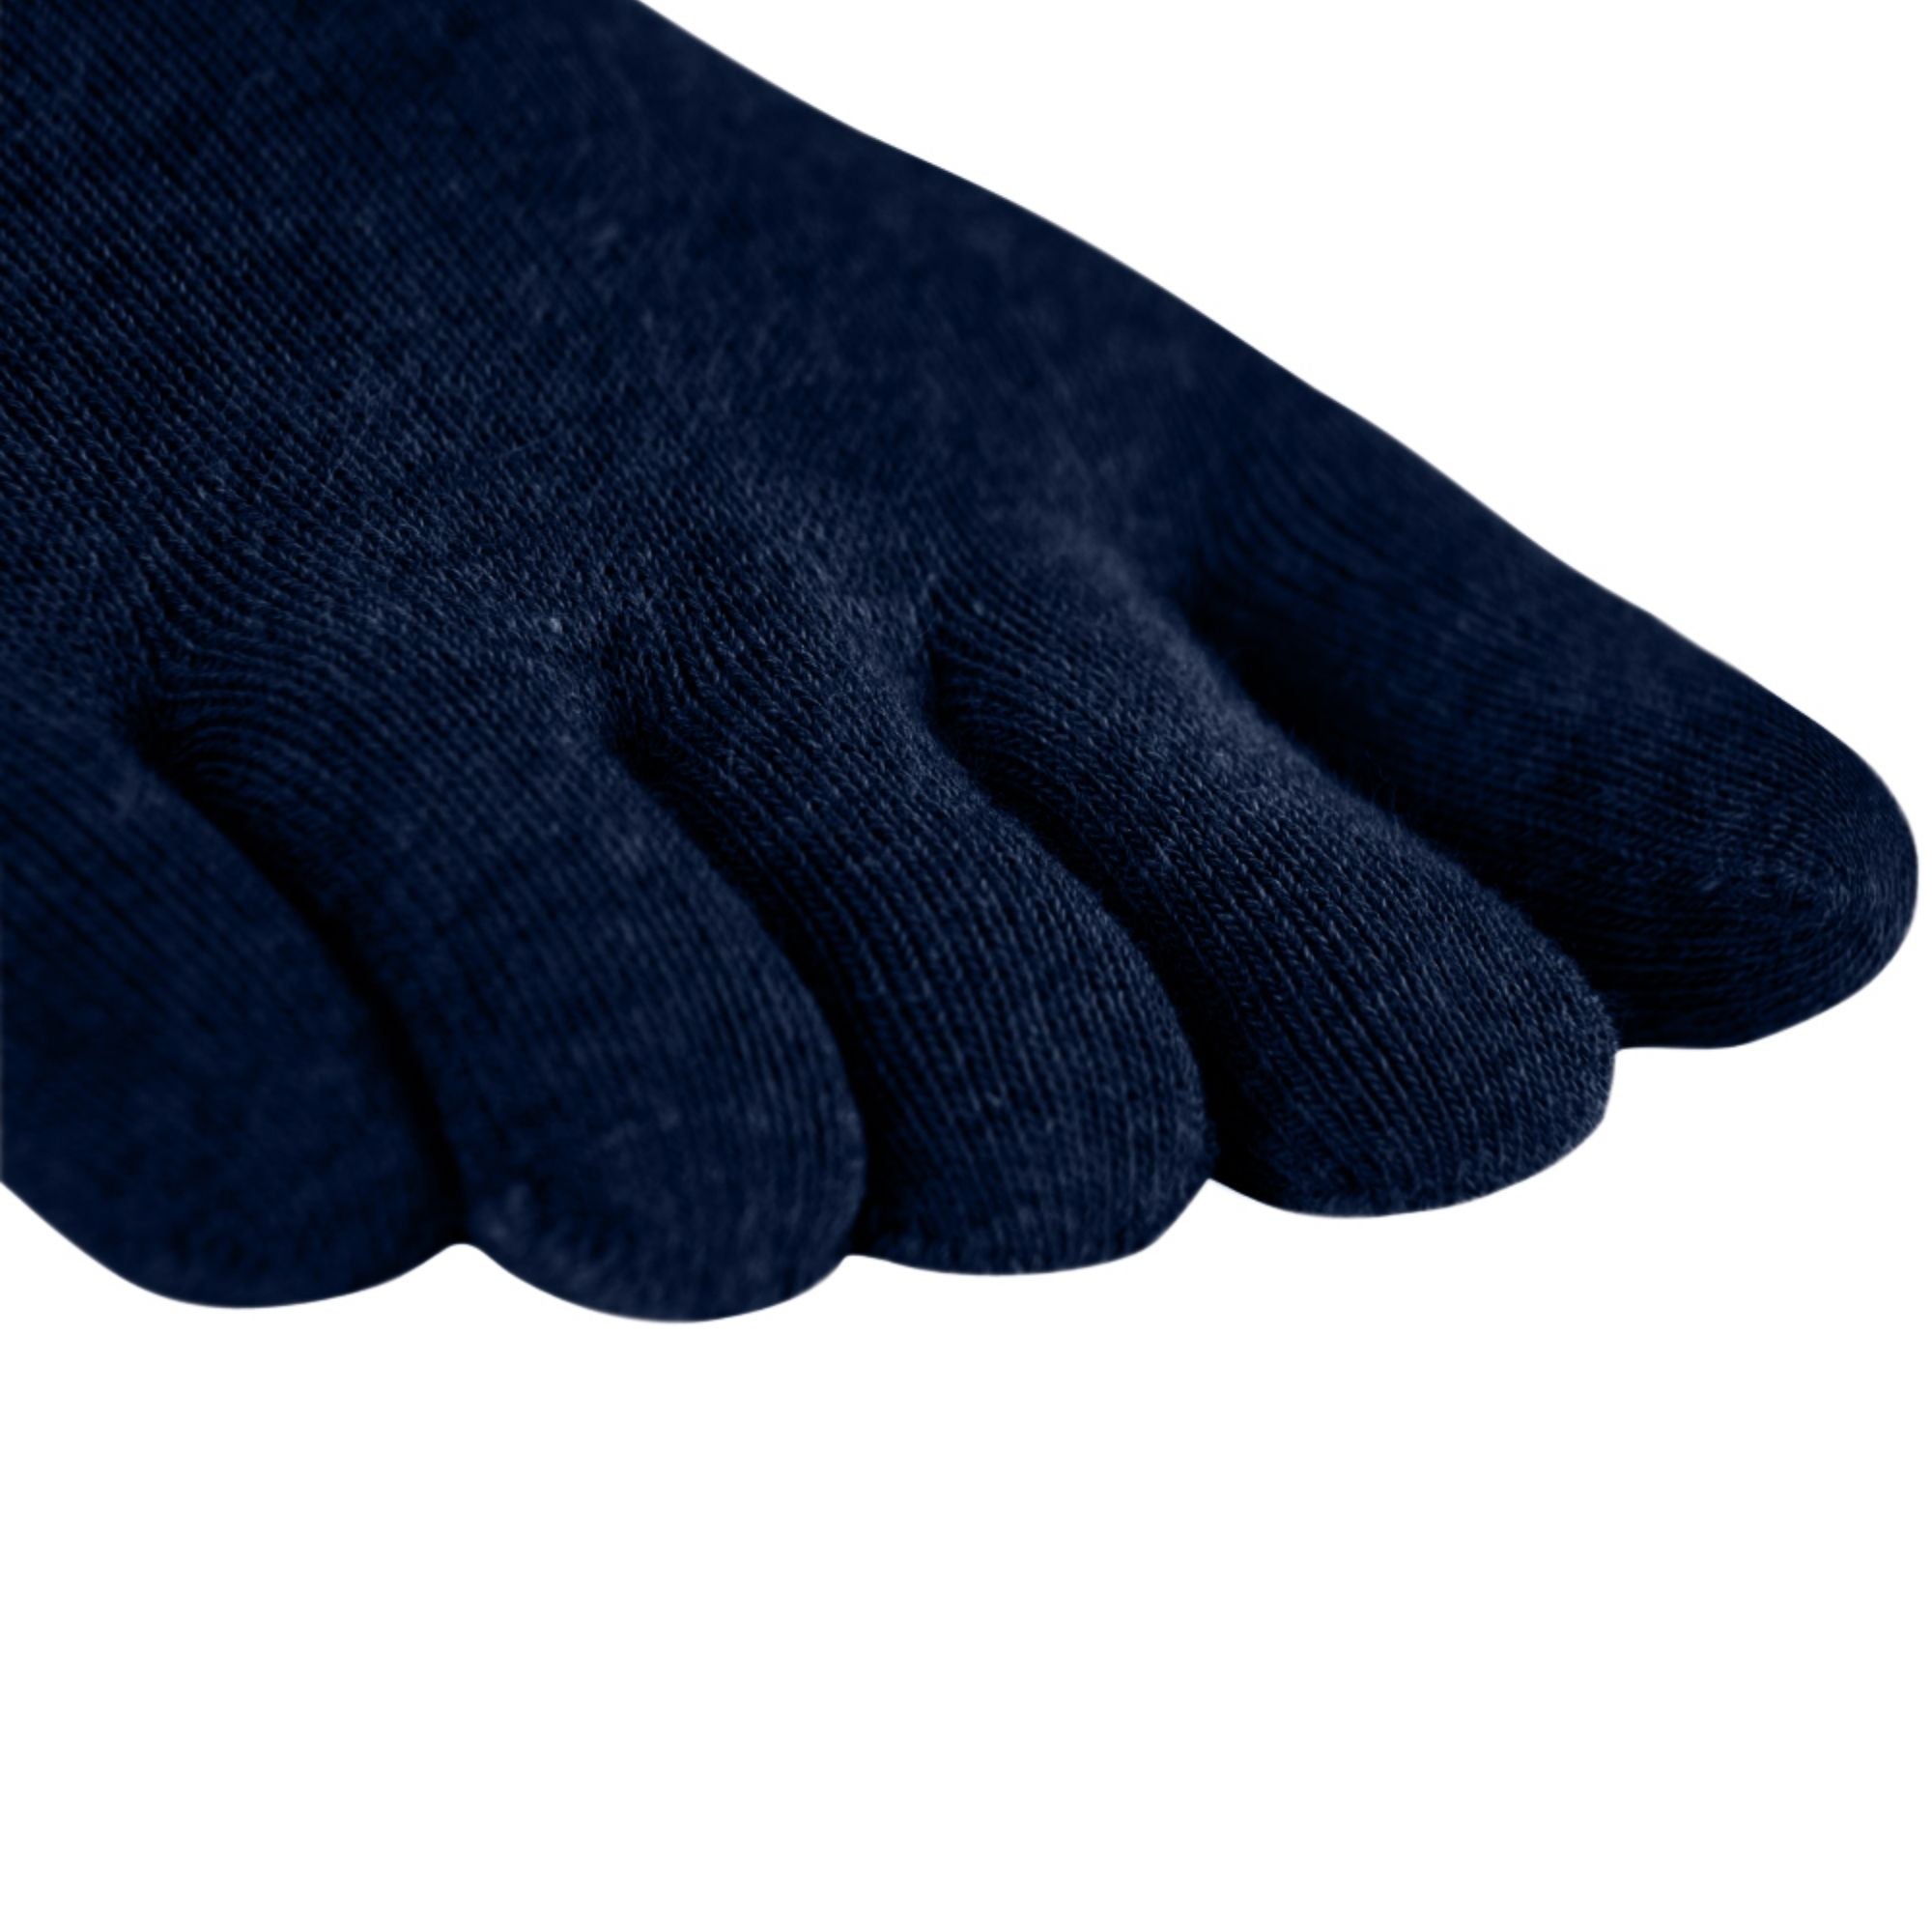 3er Sparpack Sport-Zehensocken aus Coolmax und Baumwolle von Knitido in navy blue